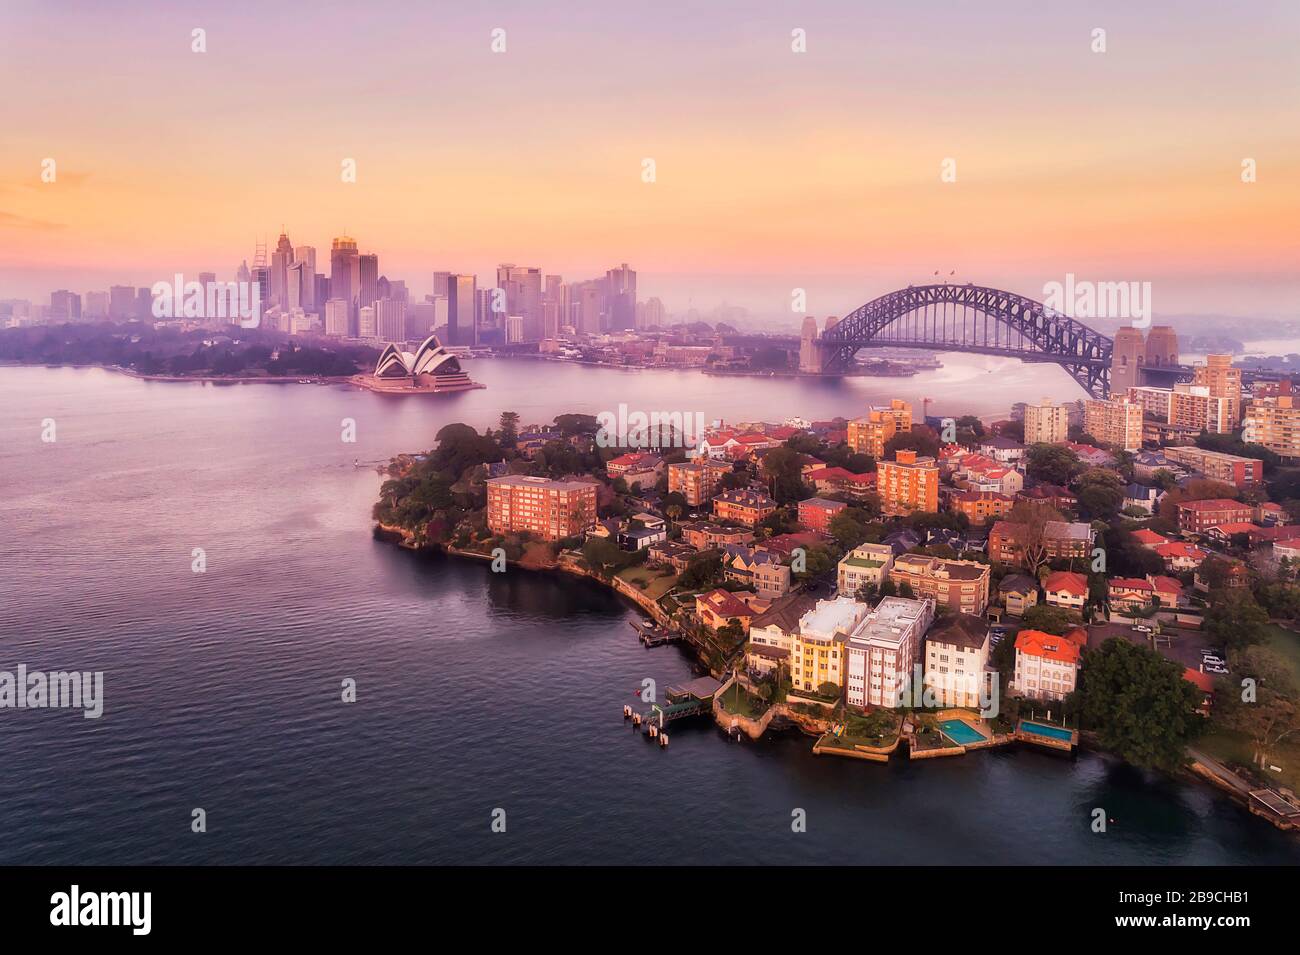 Port de Sydney et principaux sites touristiques de la ville au bord de l'eau autour du pont du port de Sydney avec vue aérienne au lever du soleil rose. Banque D'Images